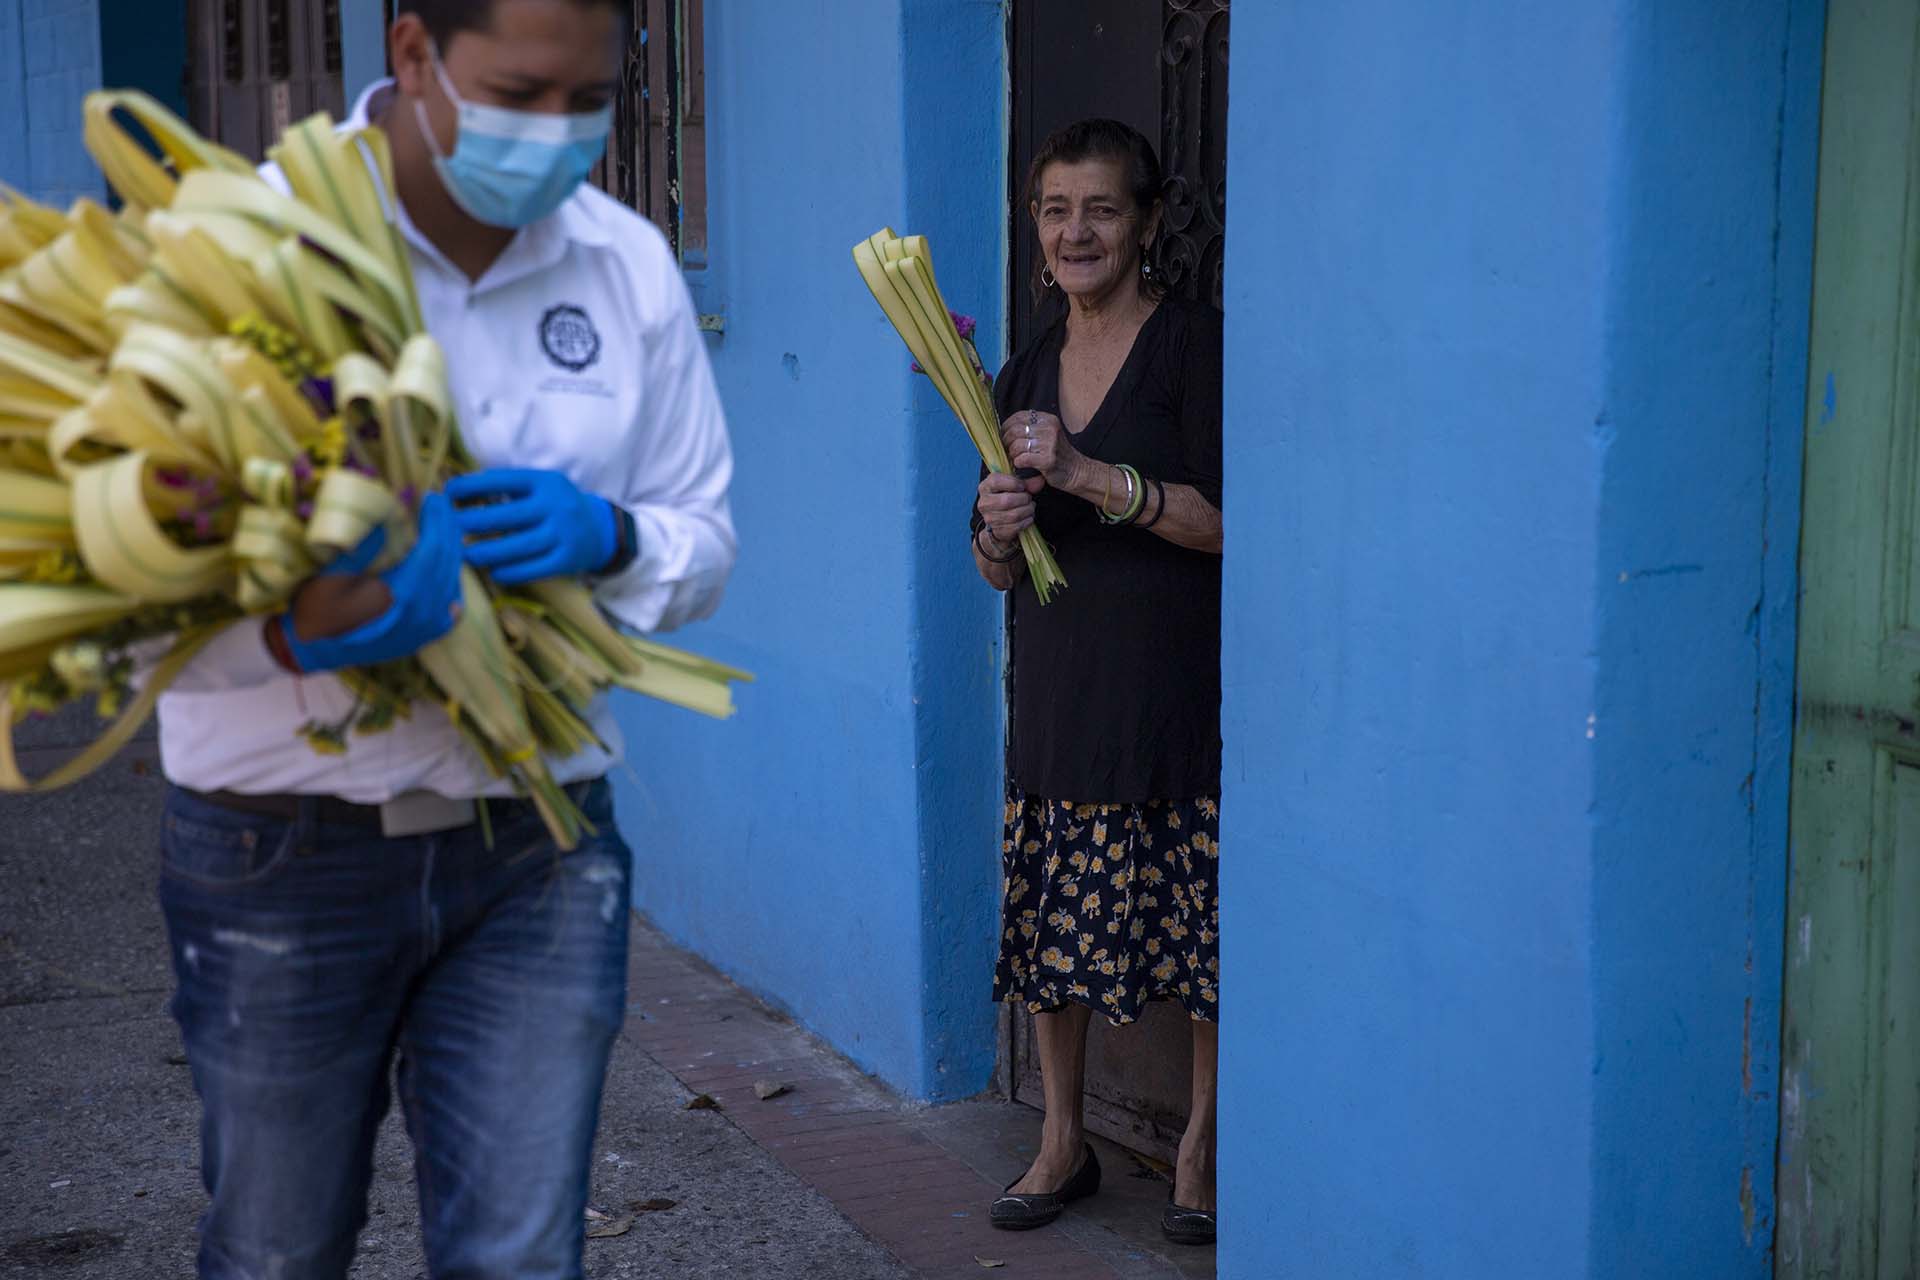 Una mujer sonríe durante los festejos de Cristo Rey en Guatemala (AP Photo/Moises Castillo)